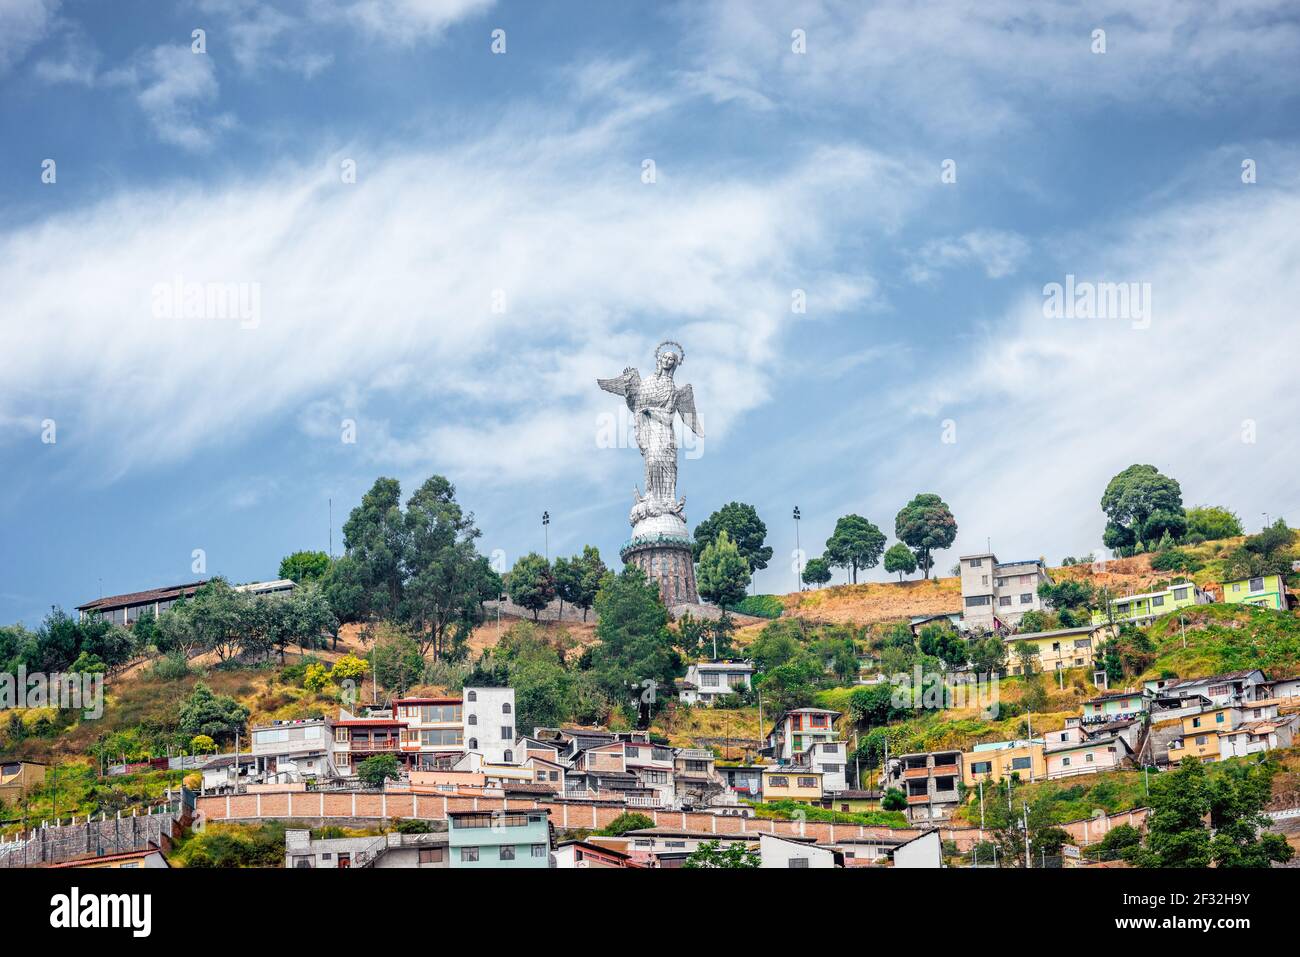 Statua di Virgin Mary de Quito in Ecuador, Sud America, visibile dal centro in una giornata di sole con cielo blu Foto Stock